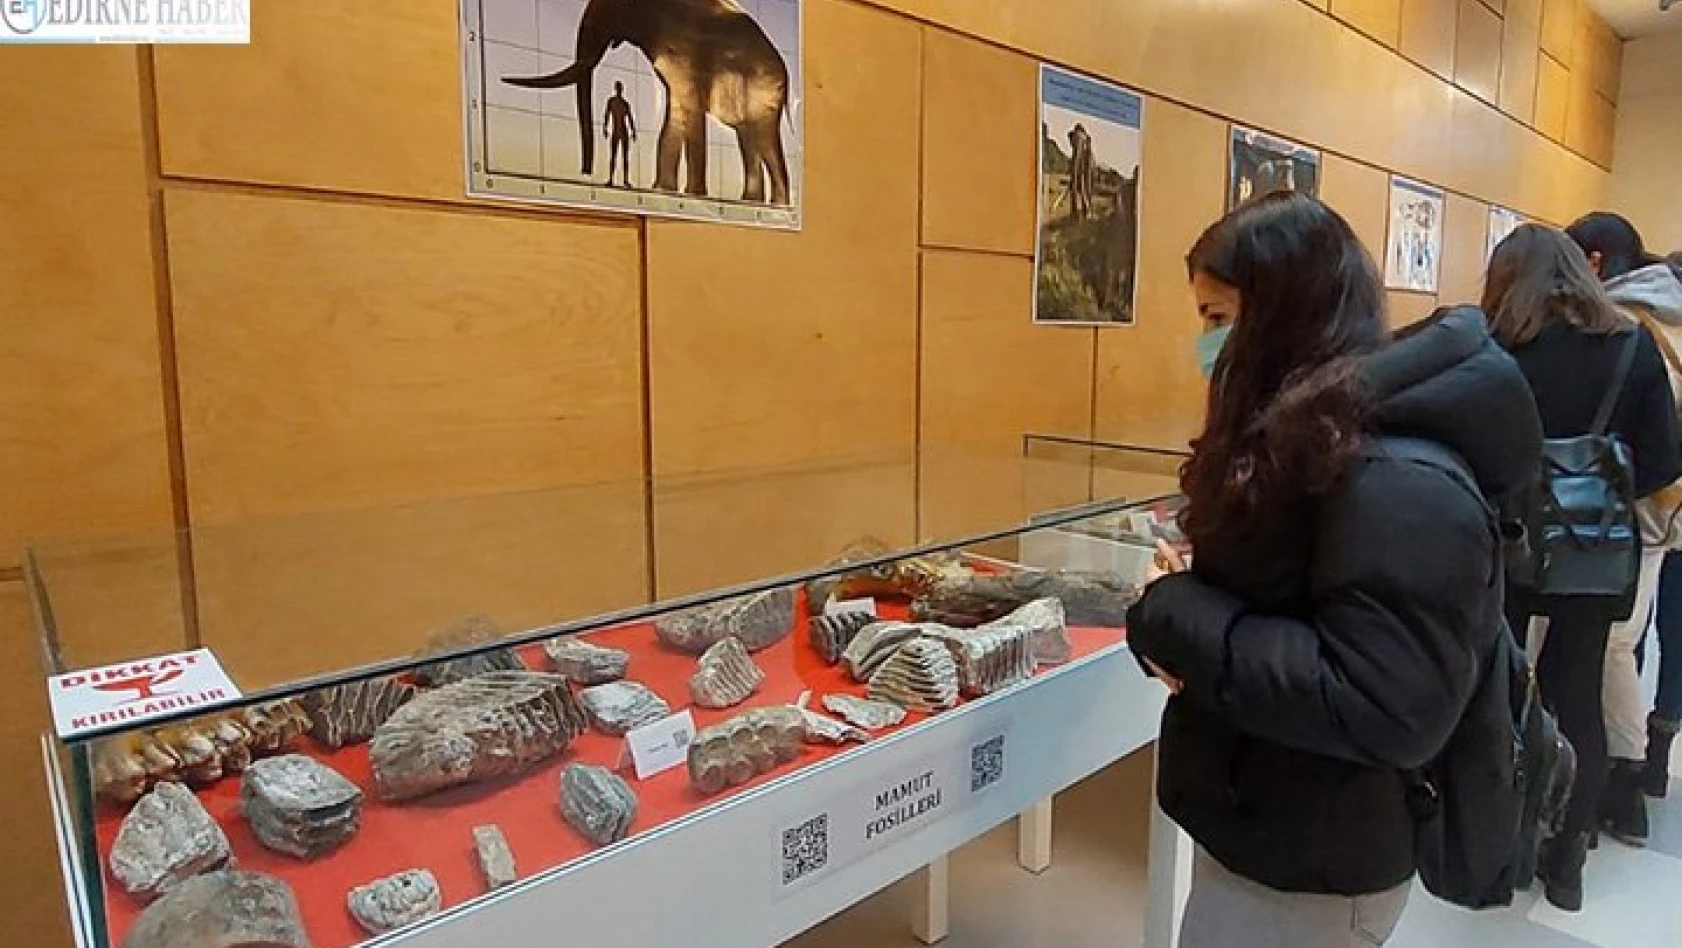 28 bin yıllık mamut kalıntıları sergileniyor